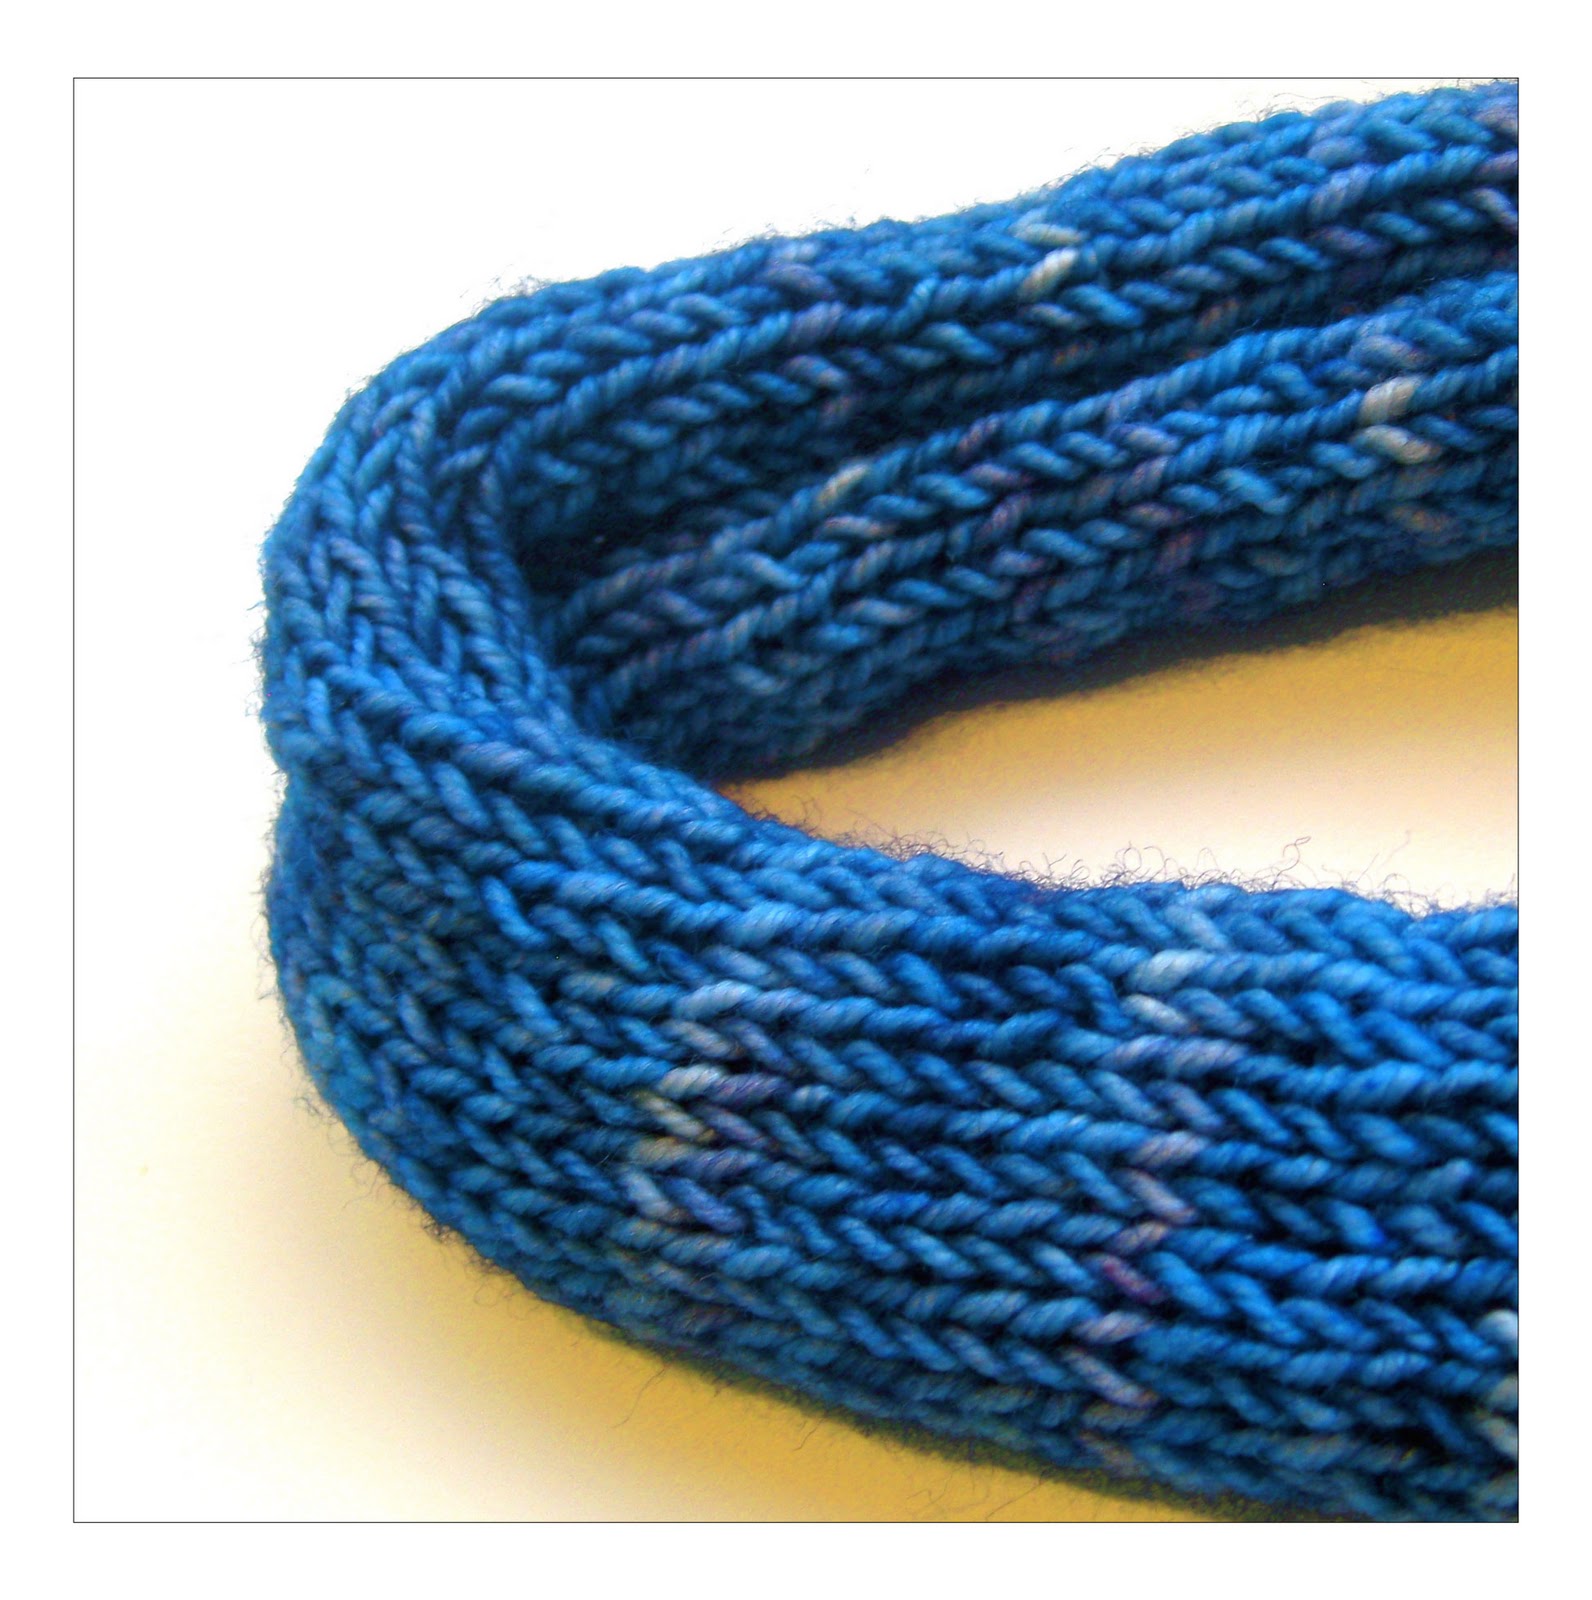 TECHknitting: A felting primer for hand knits (wet felting)